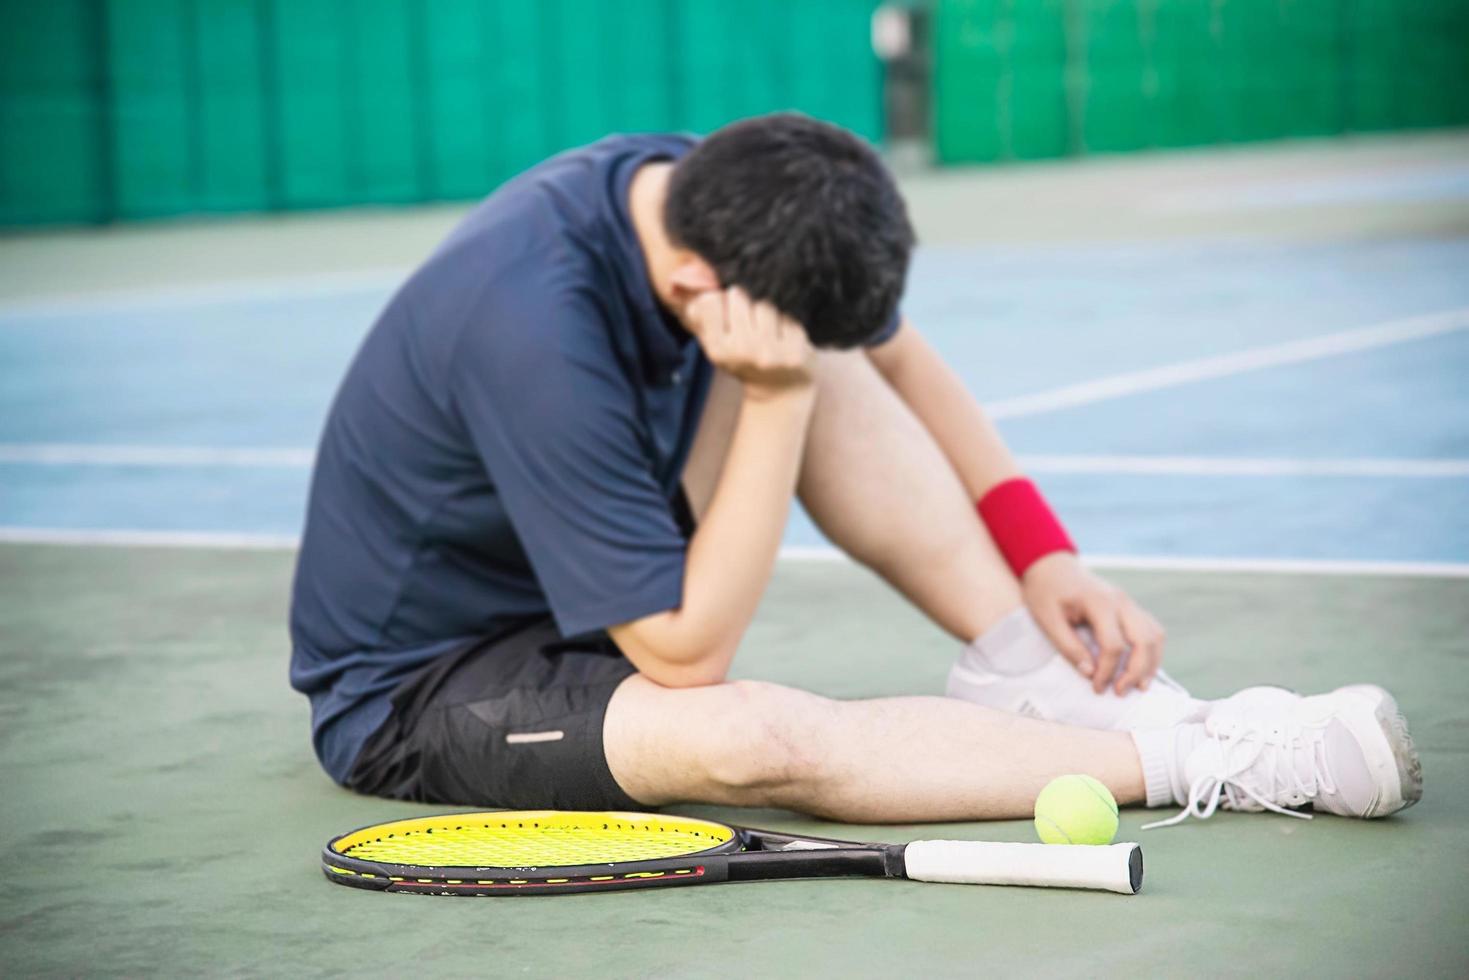 triste tenista sentado na quadra depois de perder uma partida - pessoas no conceito de jogo de tênis esportivo foto